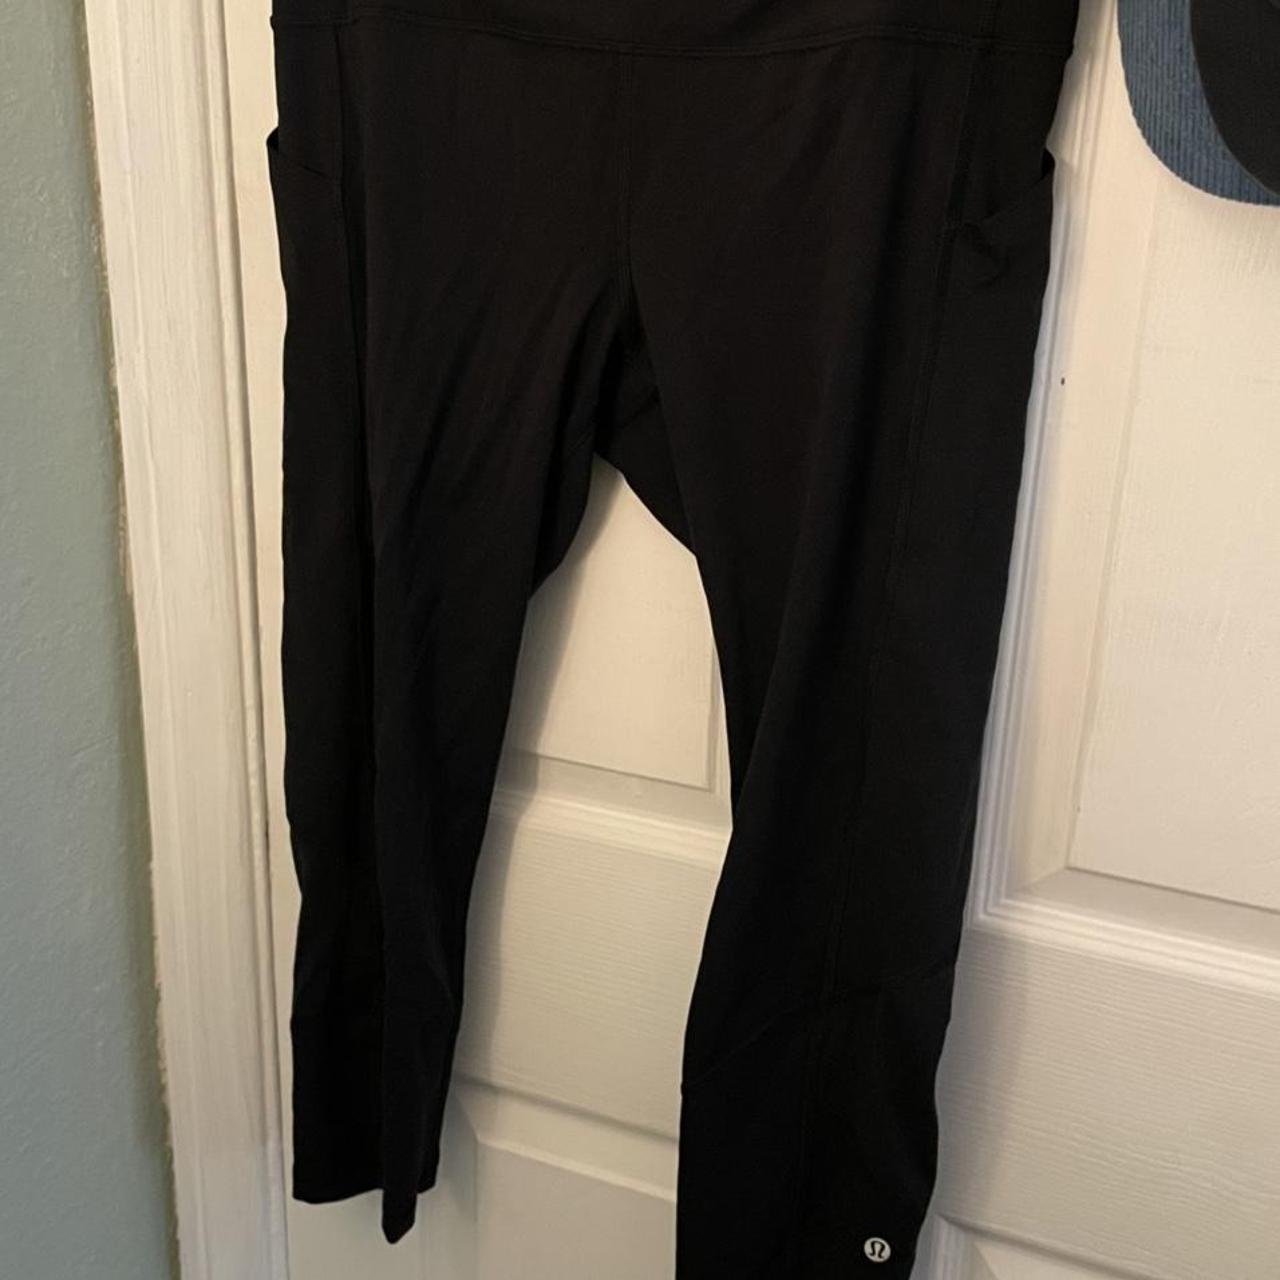 lululemon leggings size 10 💋💋 zipper at the back - Depop